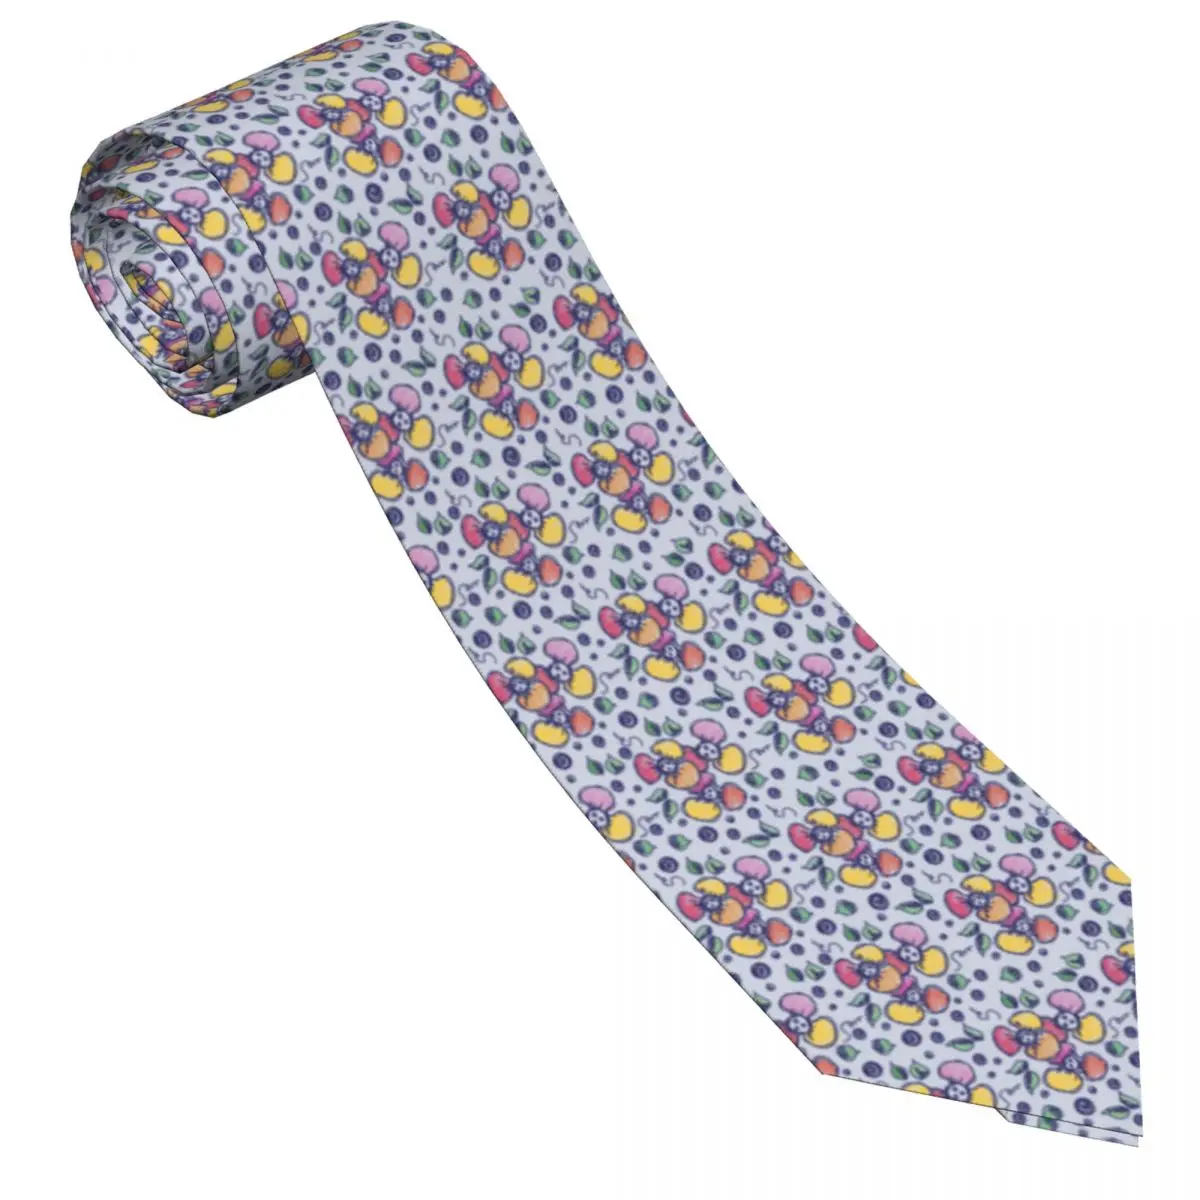 Галстук с яркими цветами, Милые листья в горошек, Милые галстуки для повседневной носки для взрослых унисекс, качественный галстук с воротником, Аксессуары для галстуков с принтом